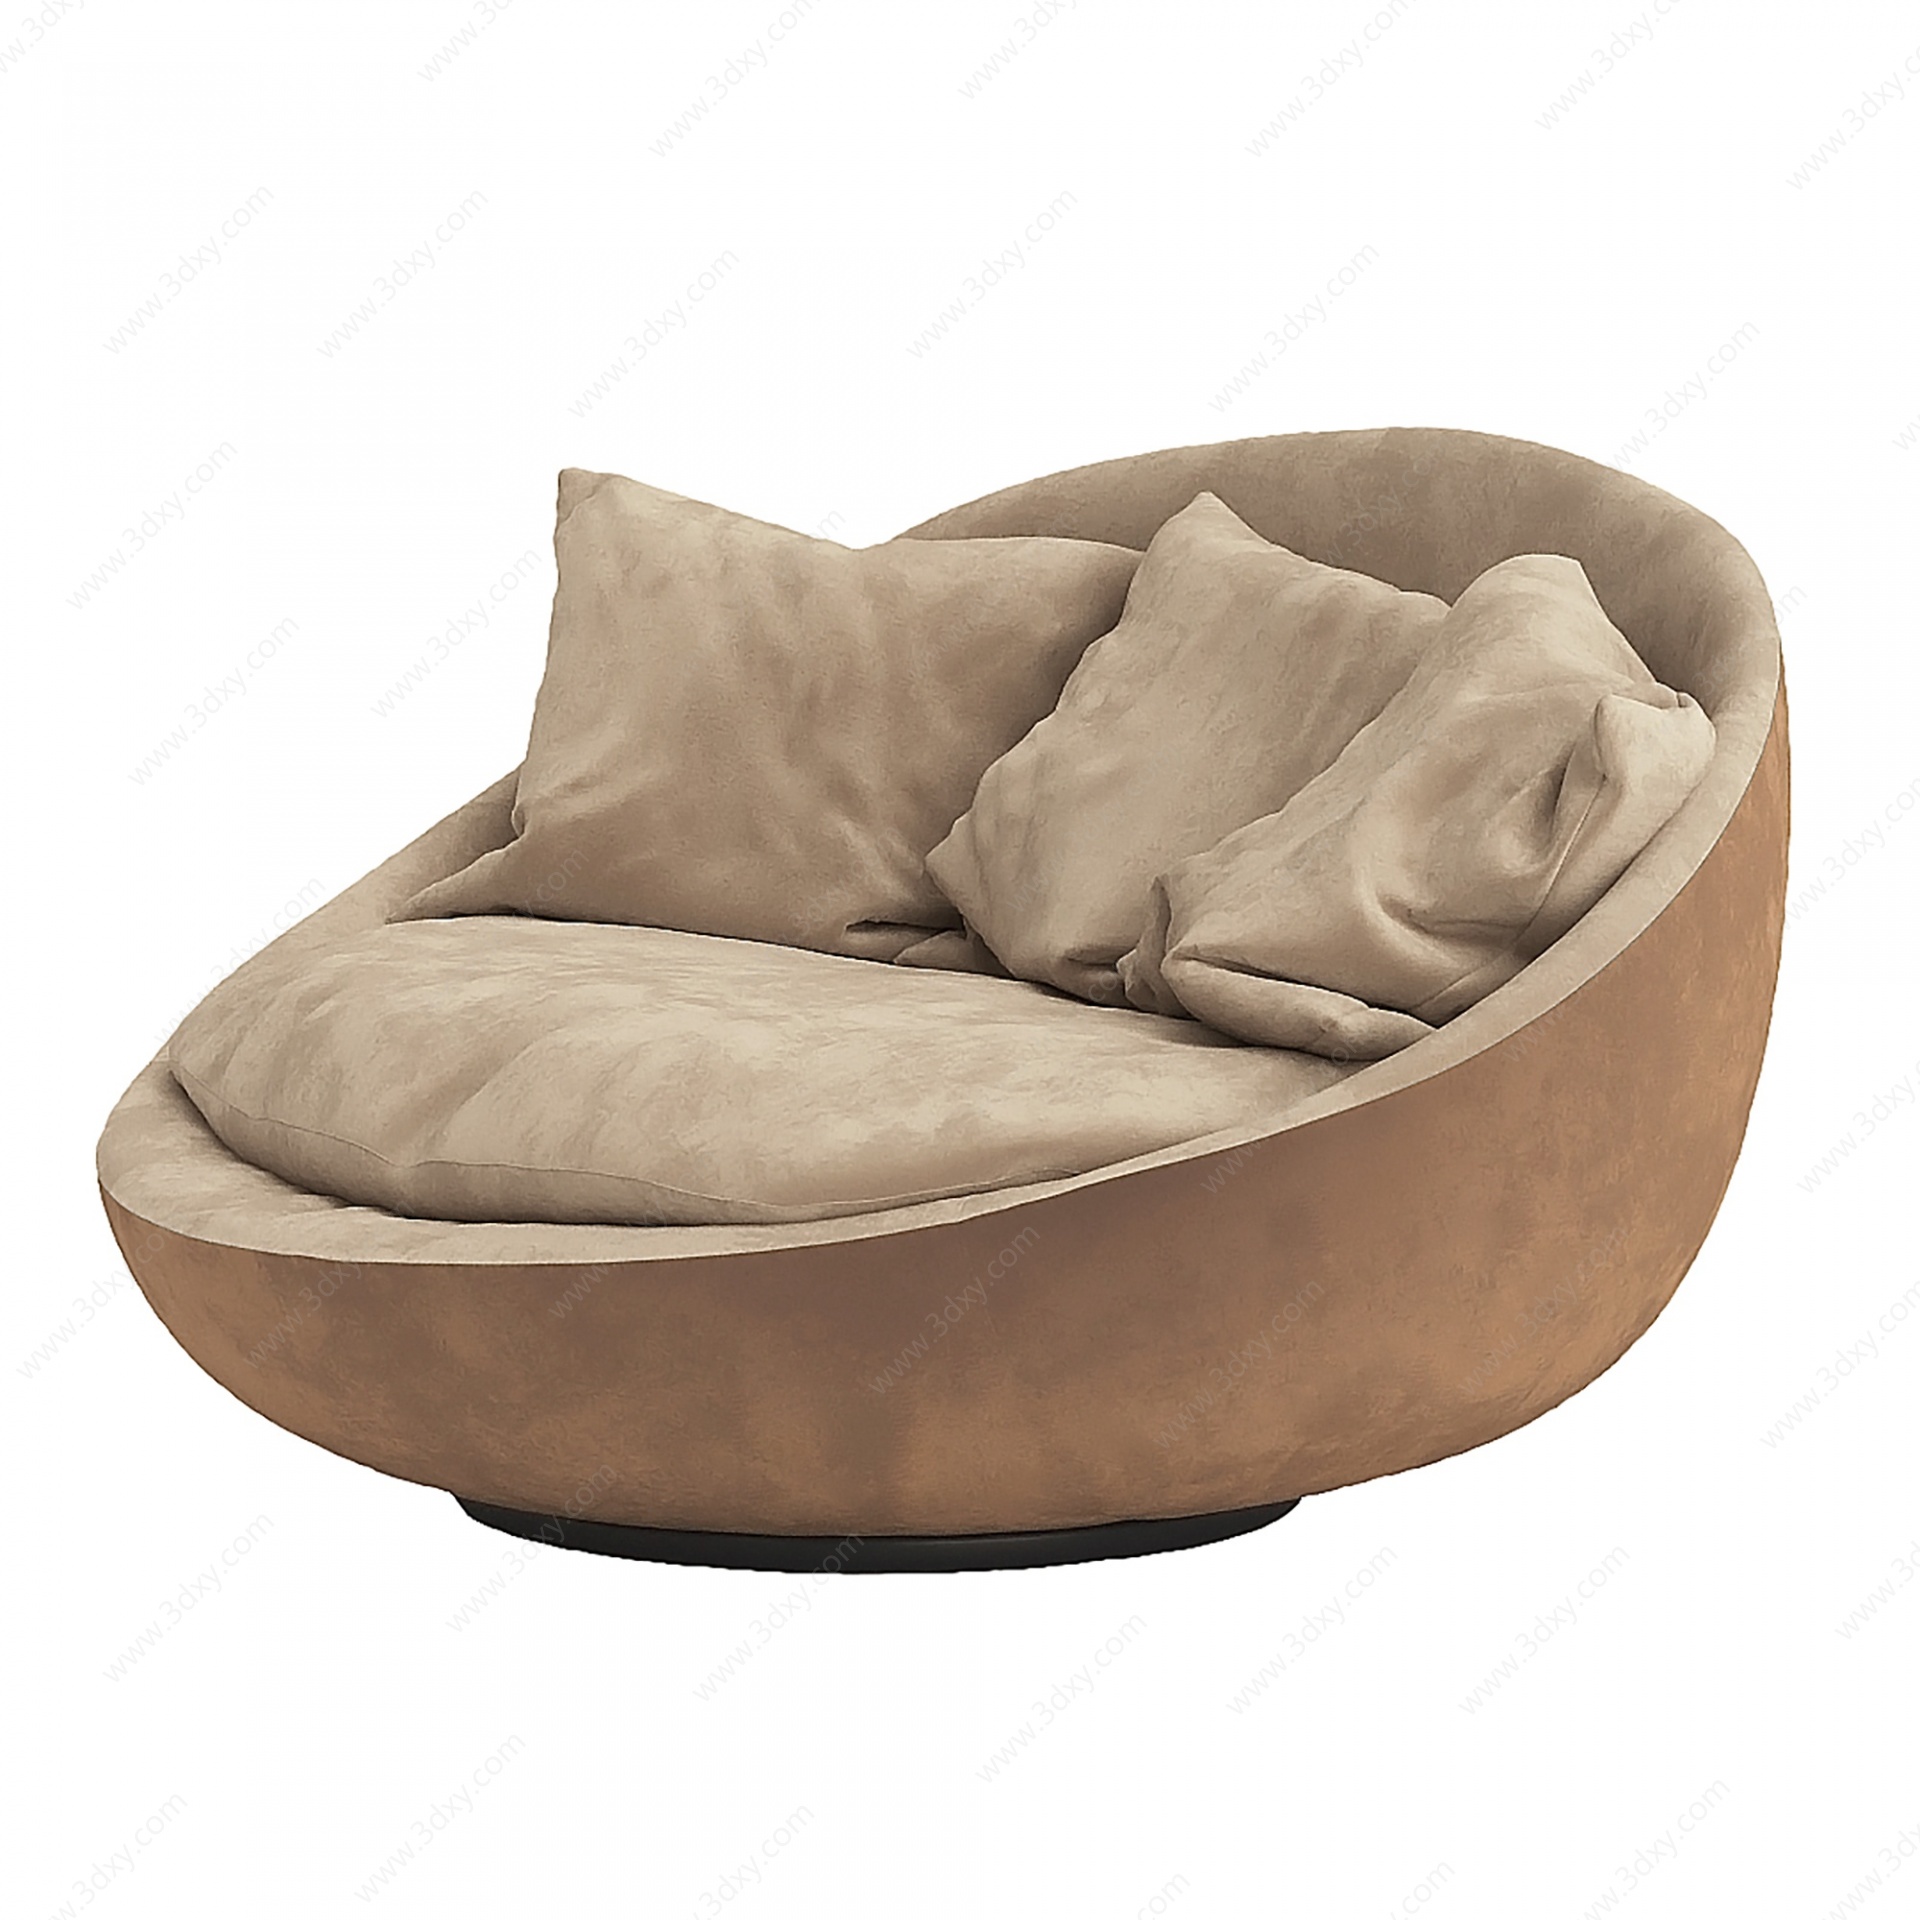 现代懒人沙发组合3D模型